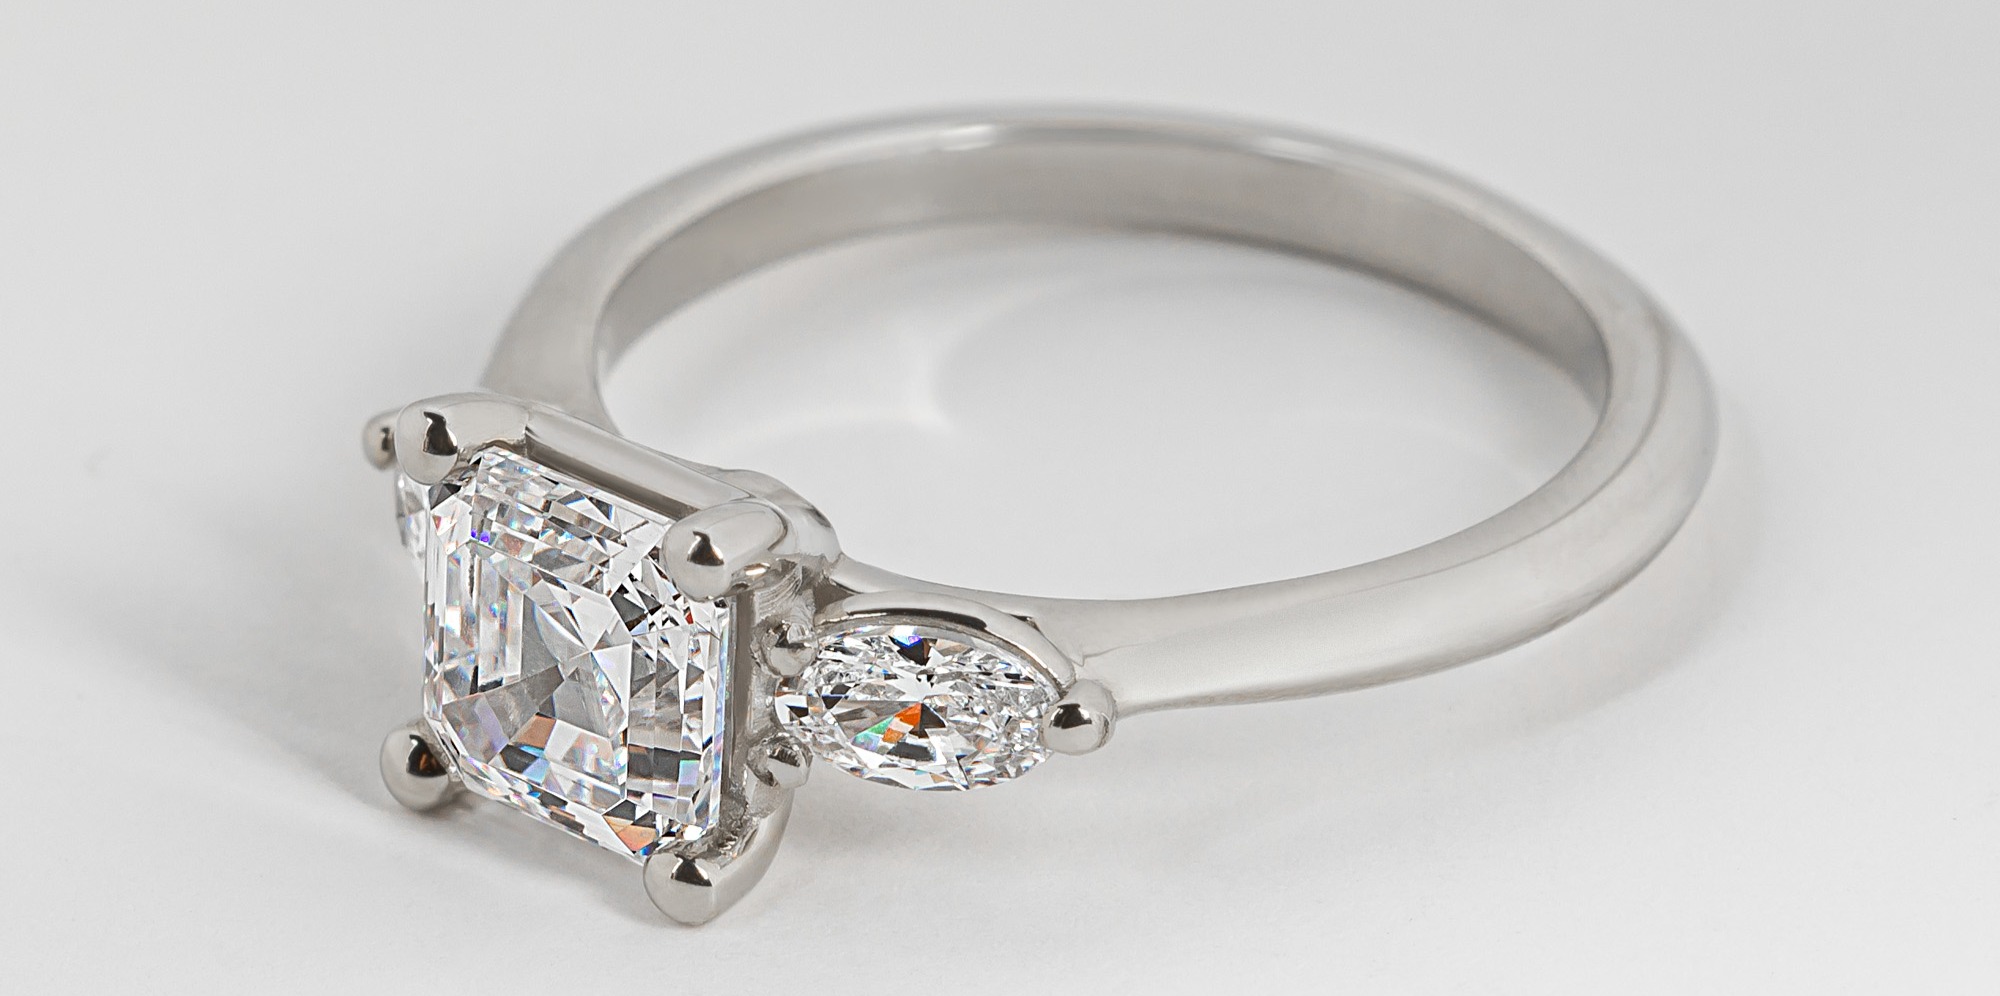 Rhea Classic Asscher Cut Engagement Ring in 18K White Gold